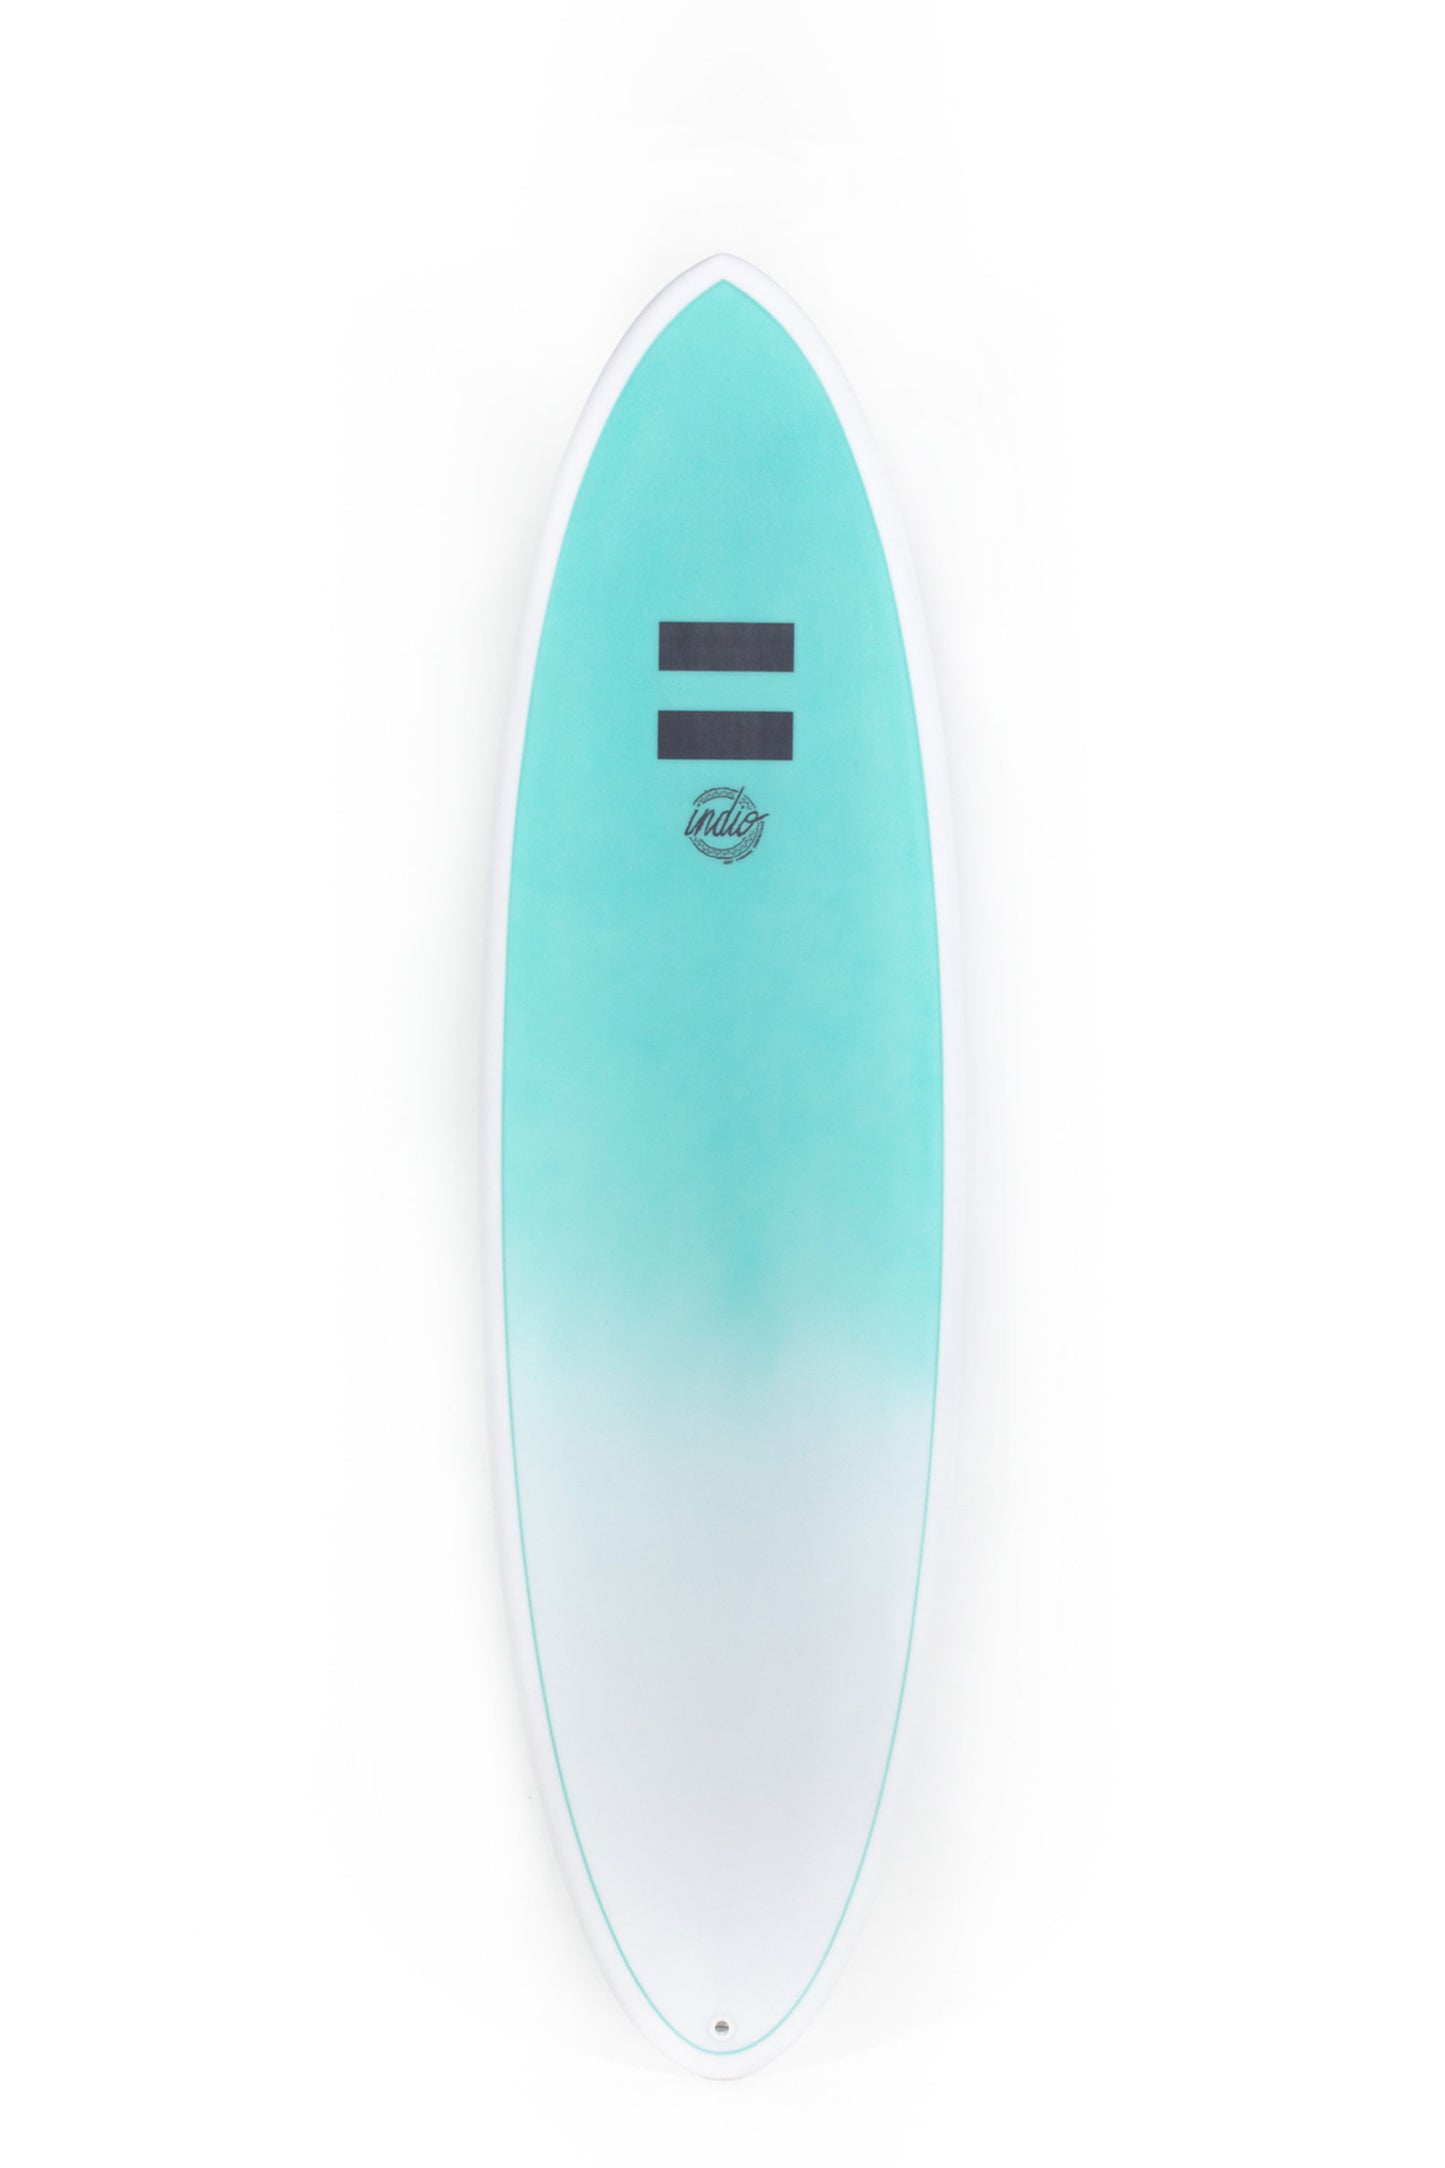 Pukas Surf Shop - Indio Surfboards - THE EGG Mint Carbon - 8´2 x 23 1/2 x 3 1/8 - 69,6L